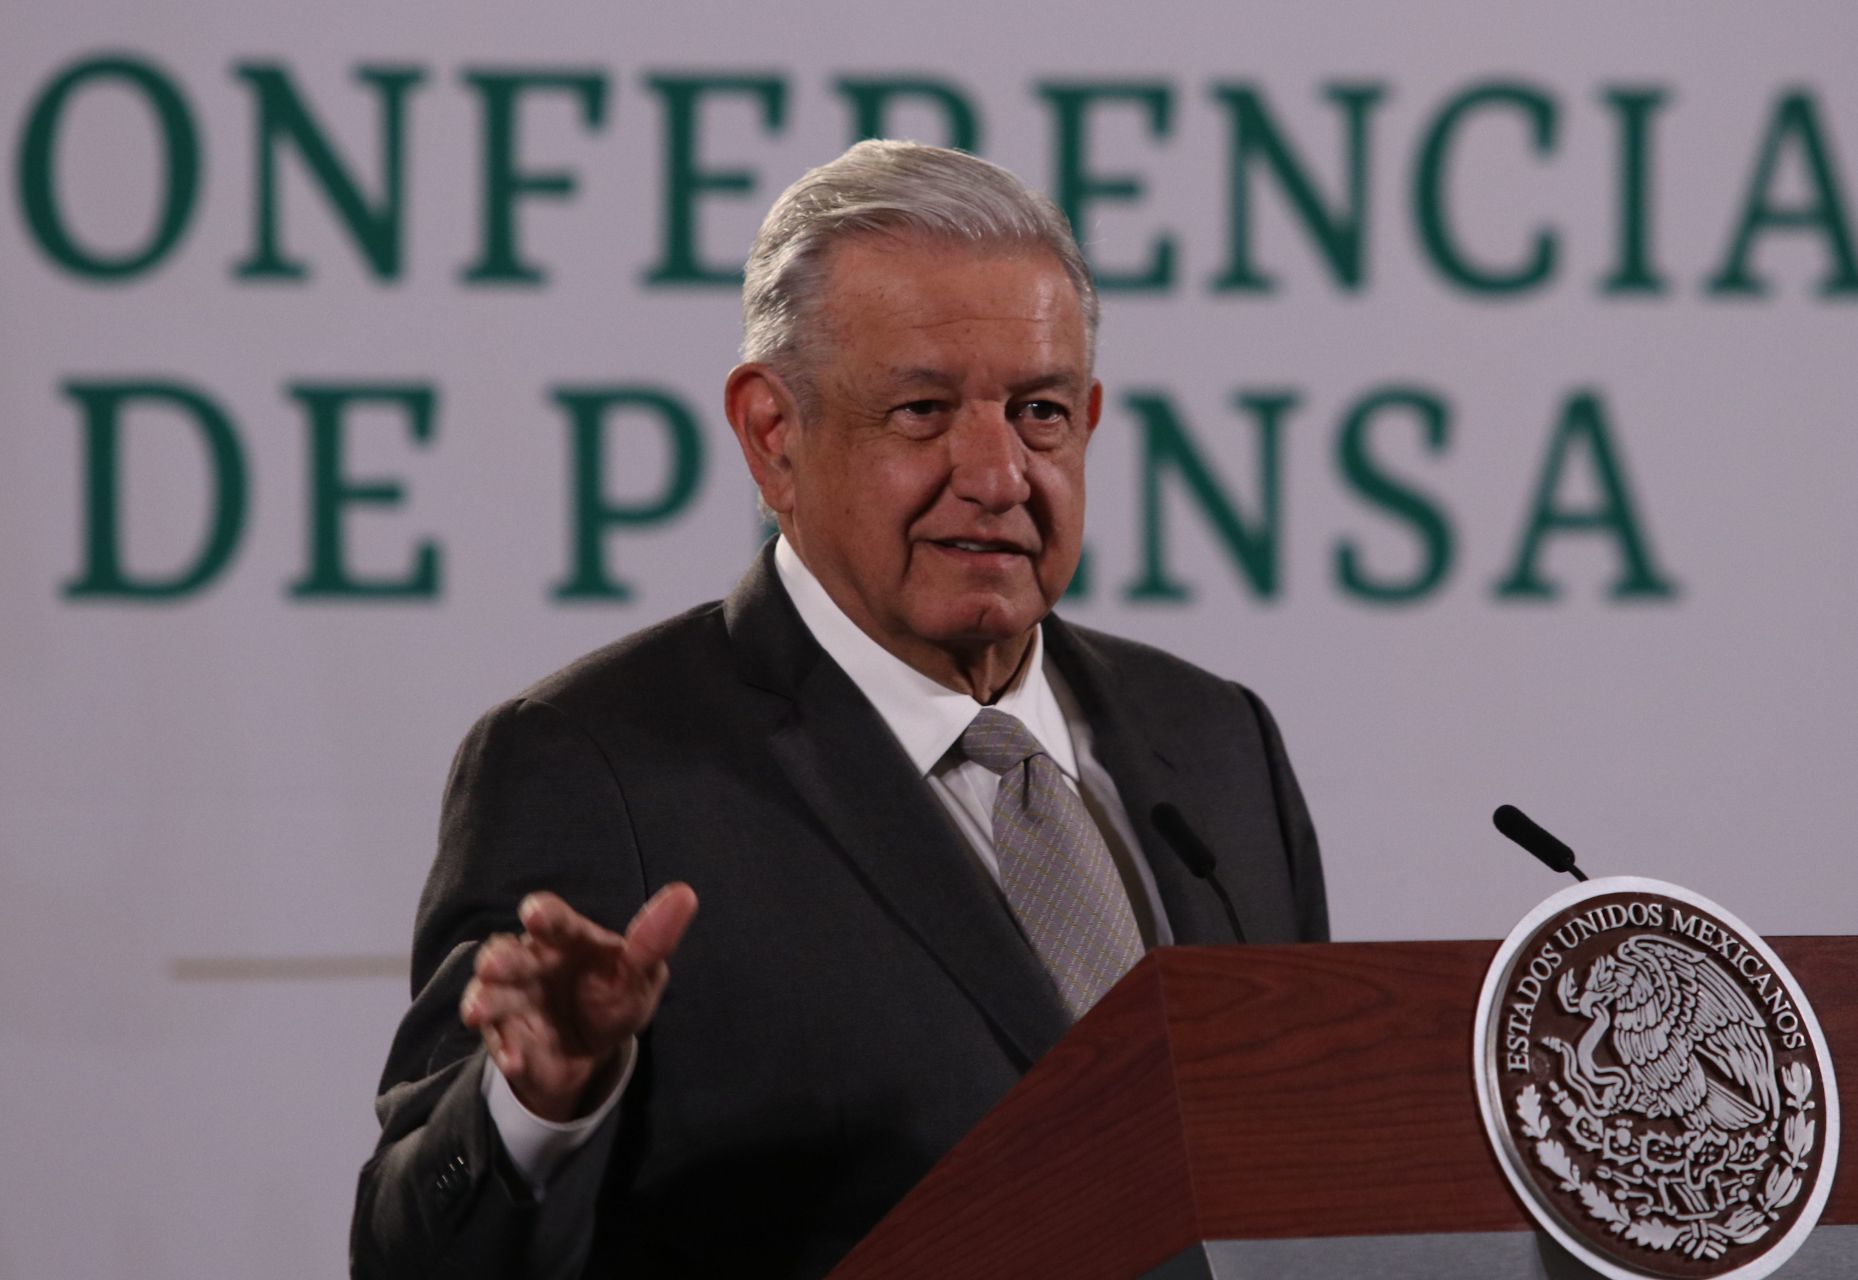 Celebra AMLO que Banxico respalde destinar recursos del FMI a pago de deuda